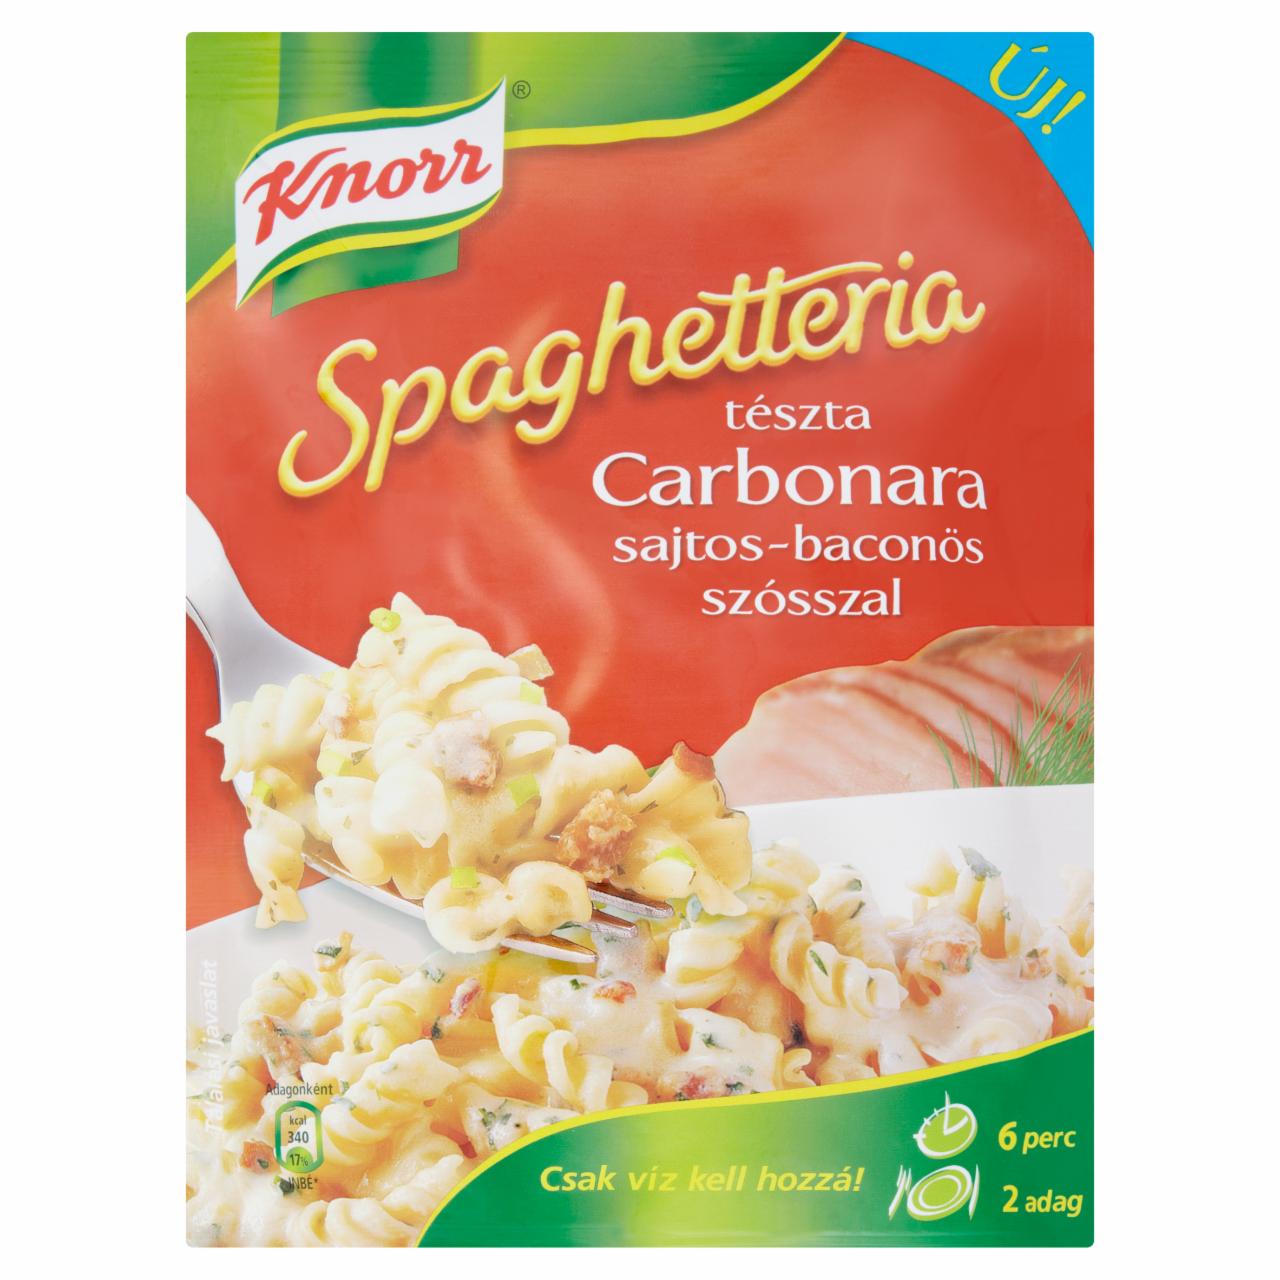 Képek - Knorr Spaghetteria tészta carbonara sajtos-baconös szósszal 154 g